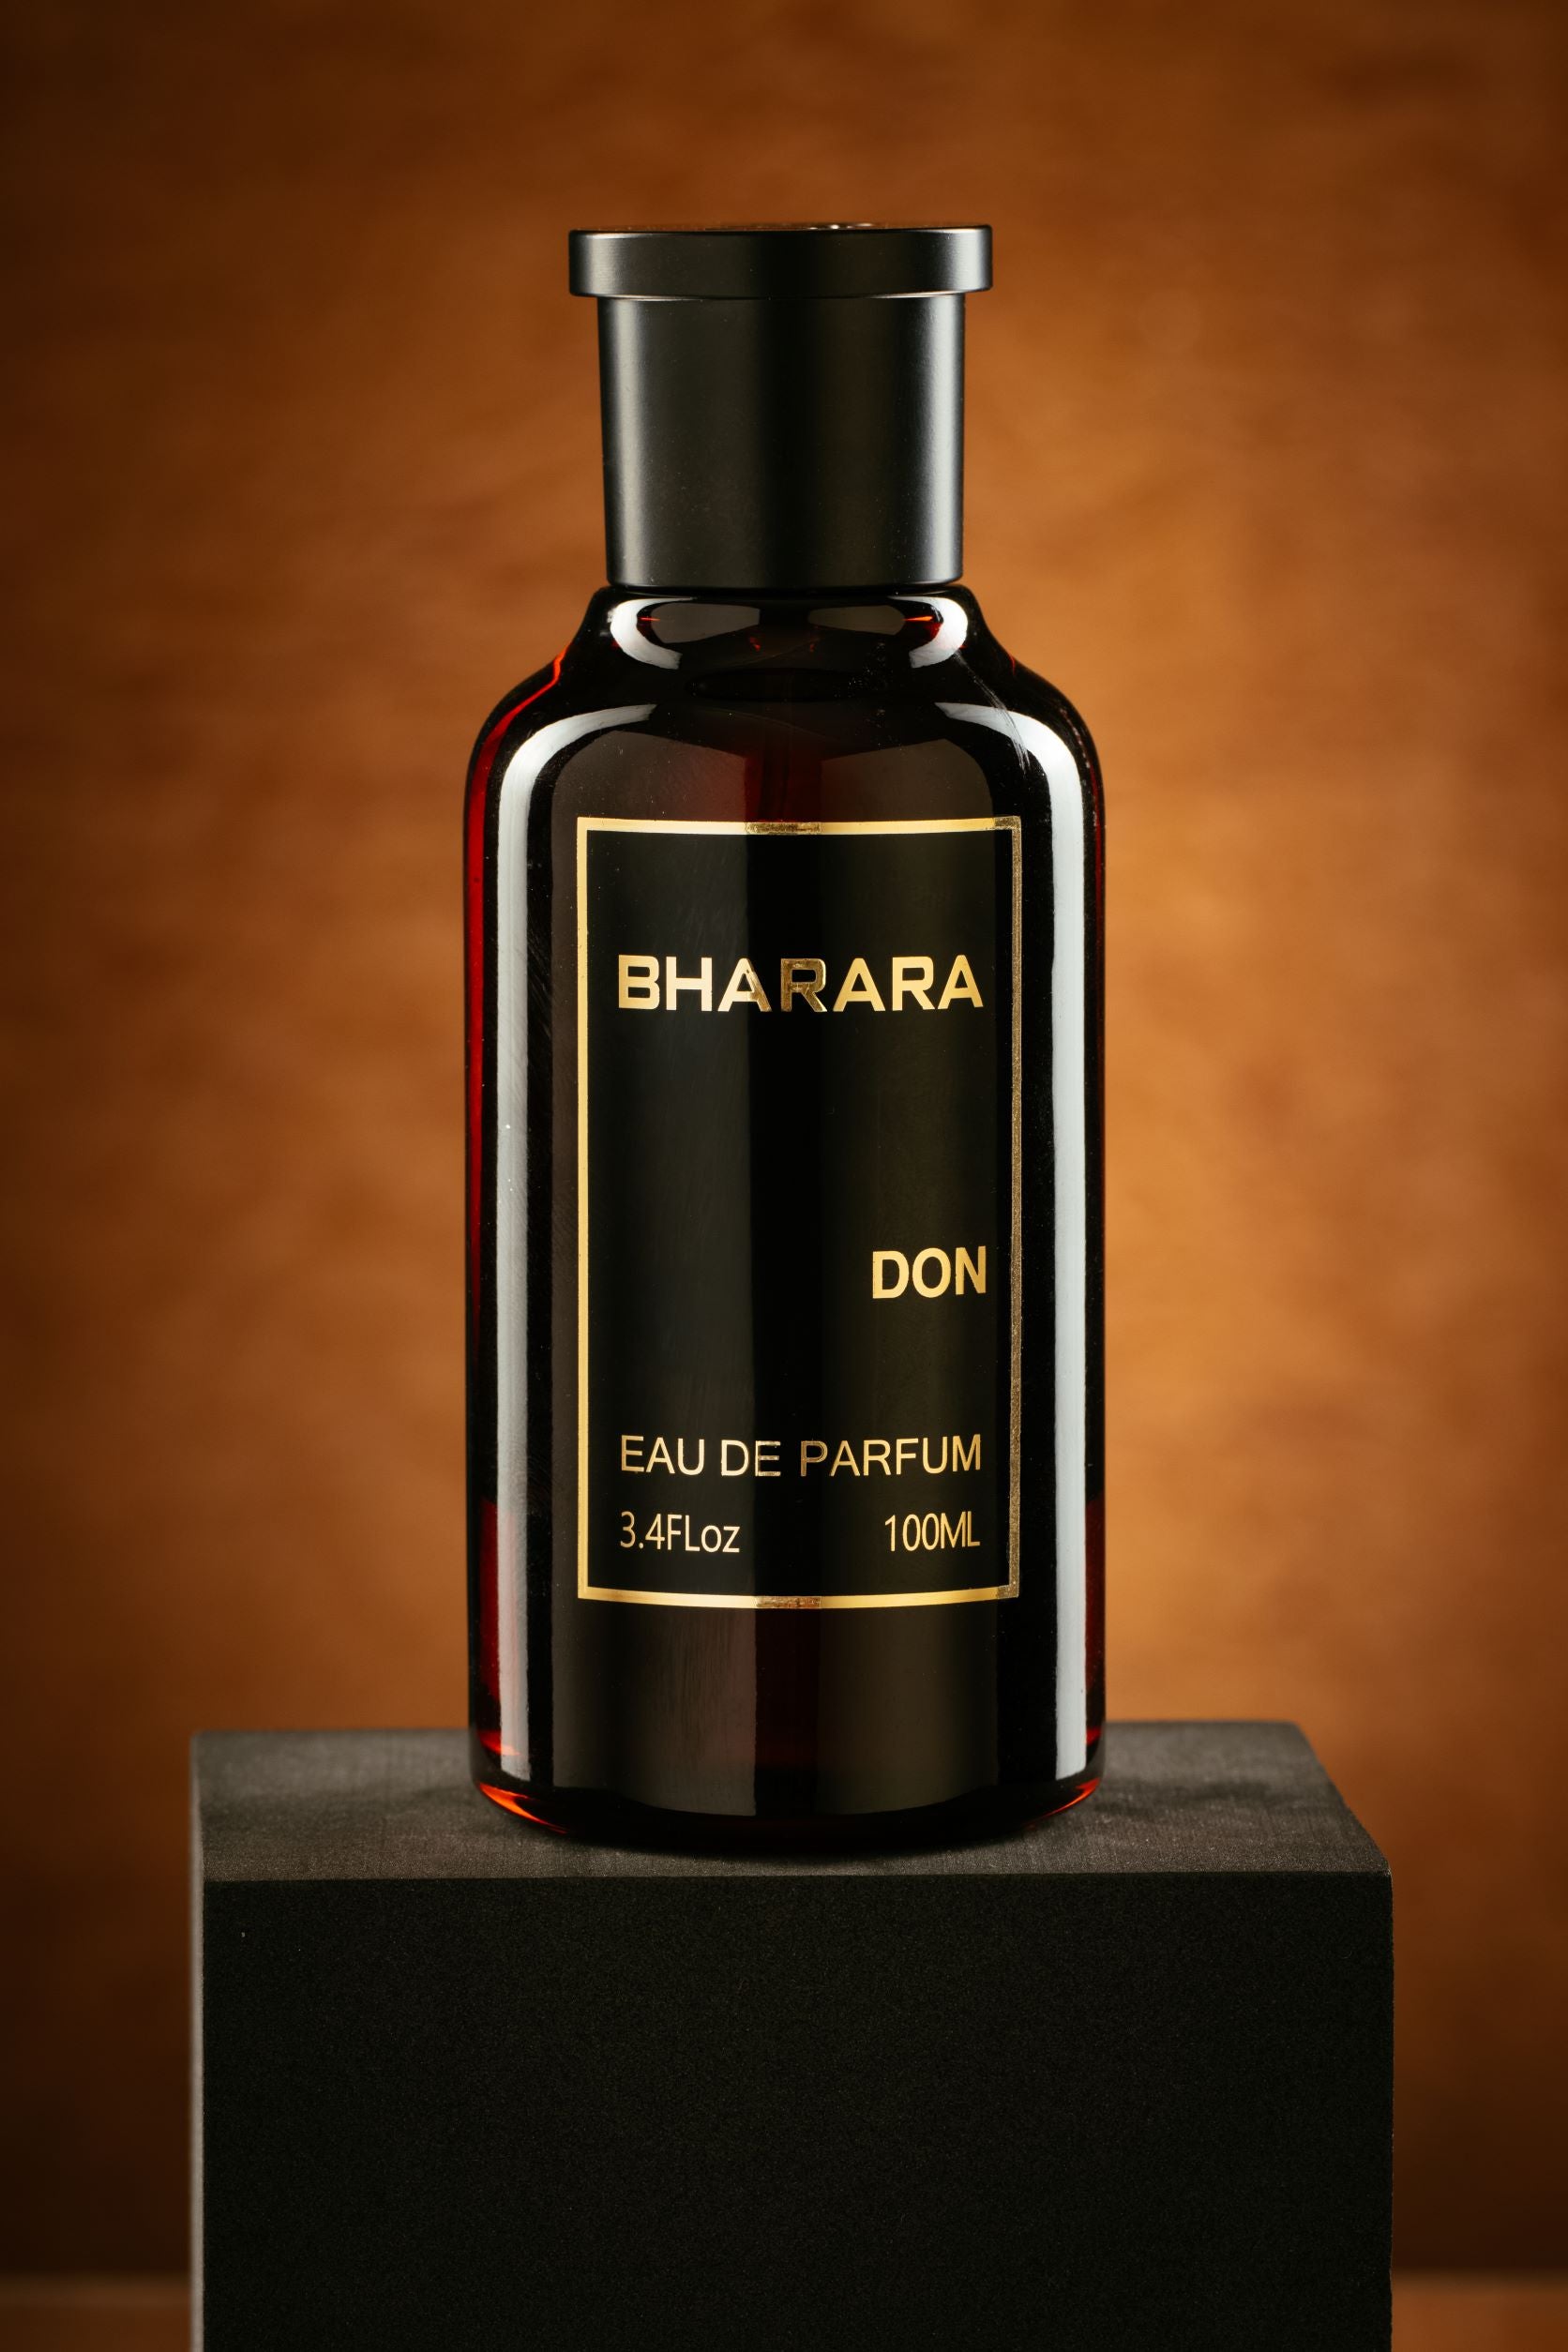 Bharara King by Bharara Eau de Parfum Spray 3.4 oz, Men